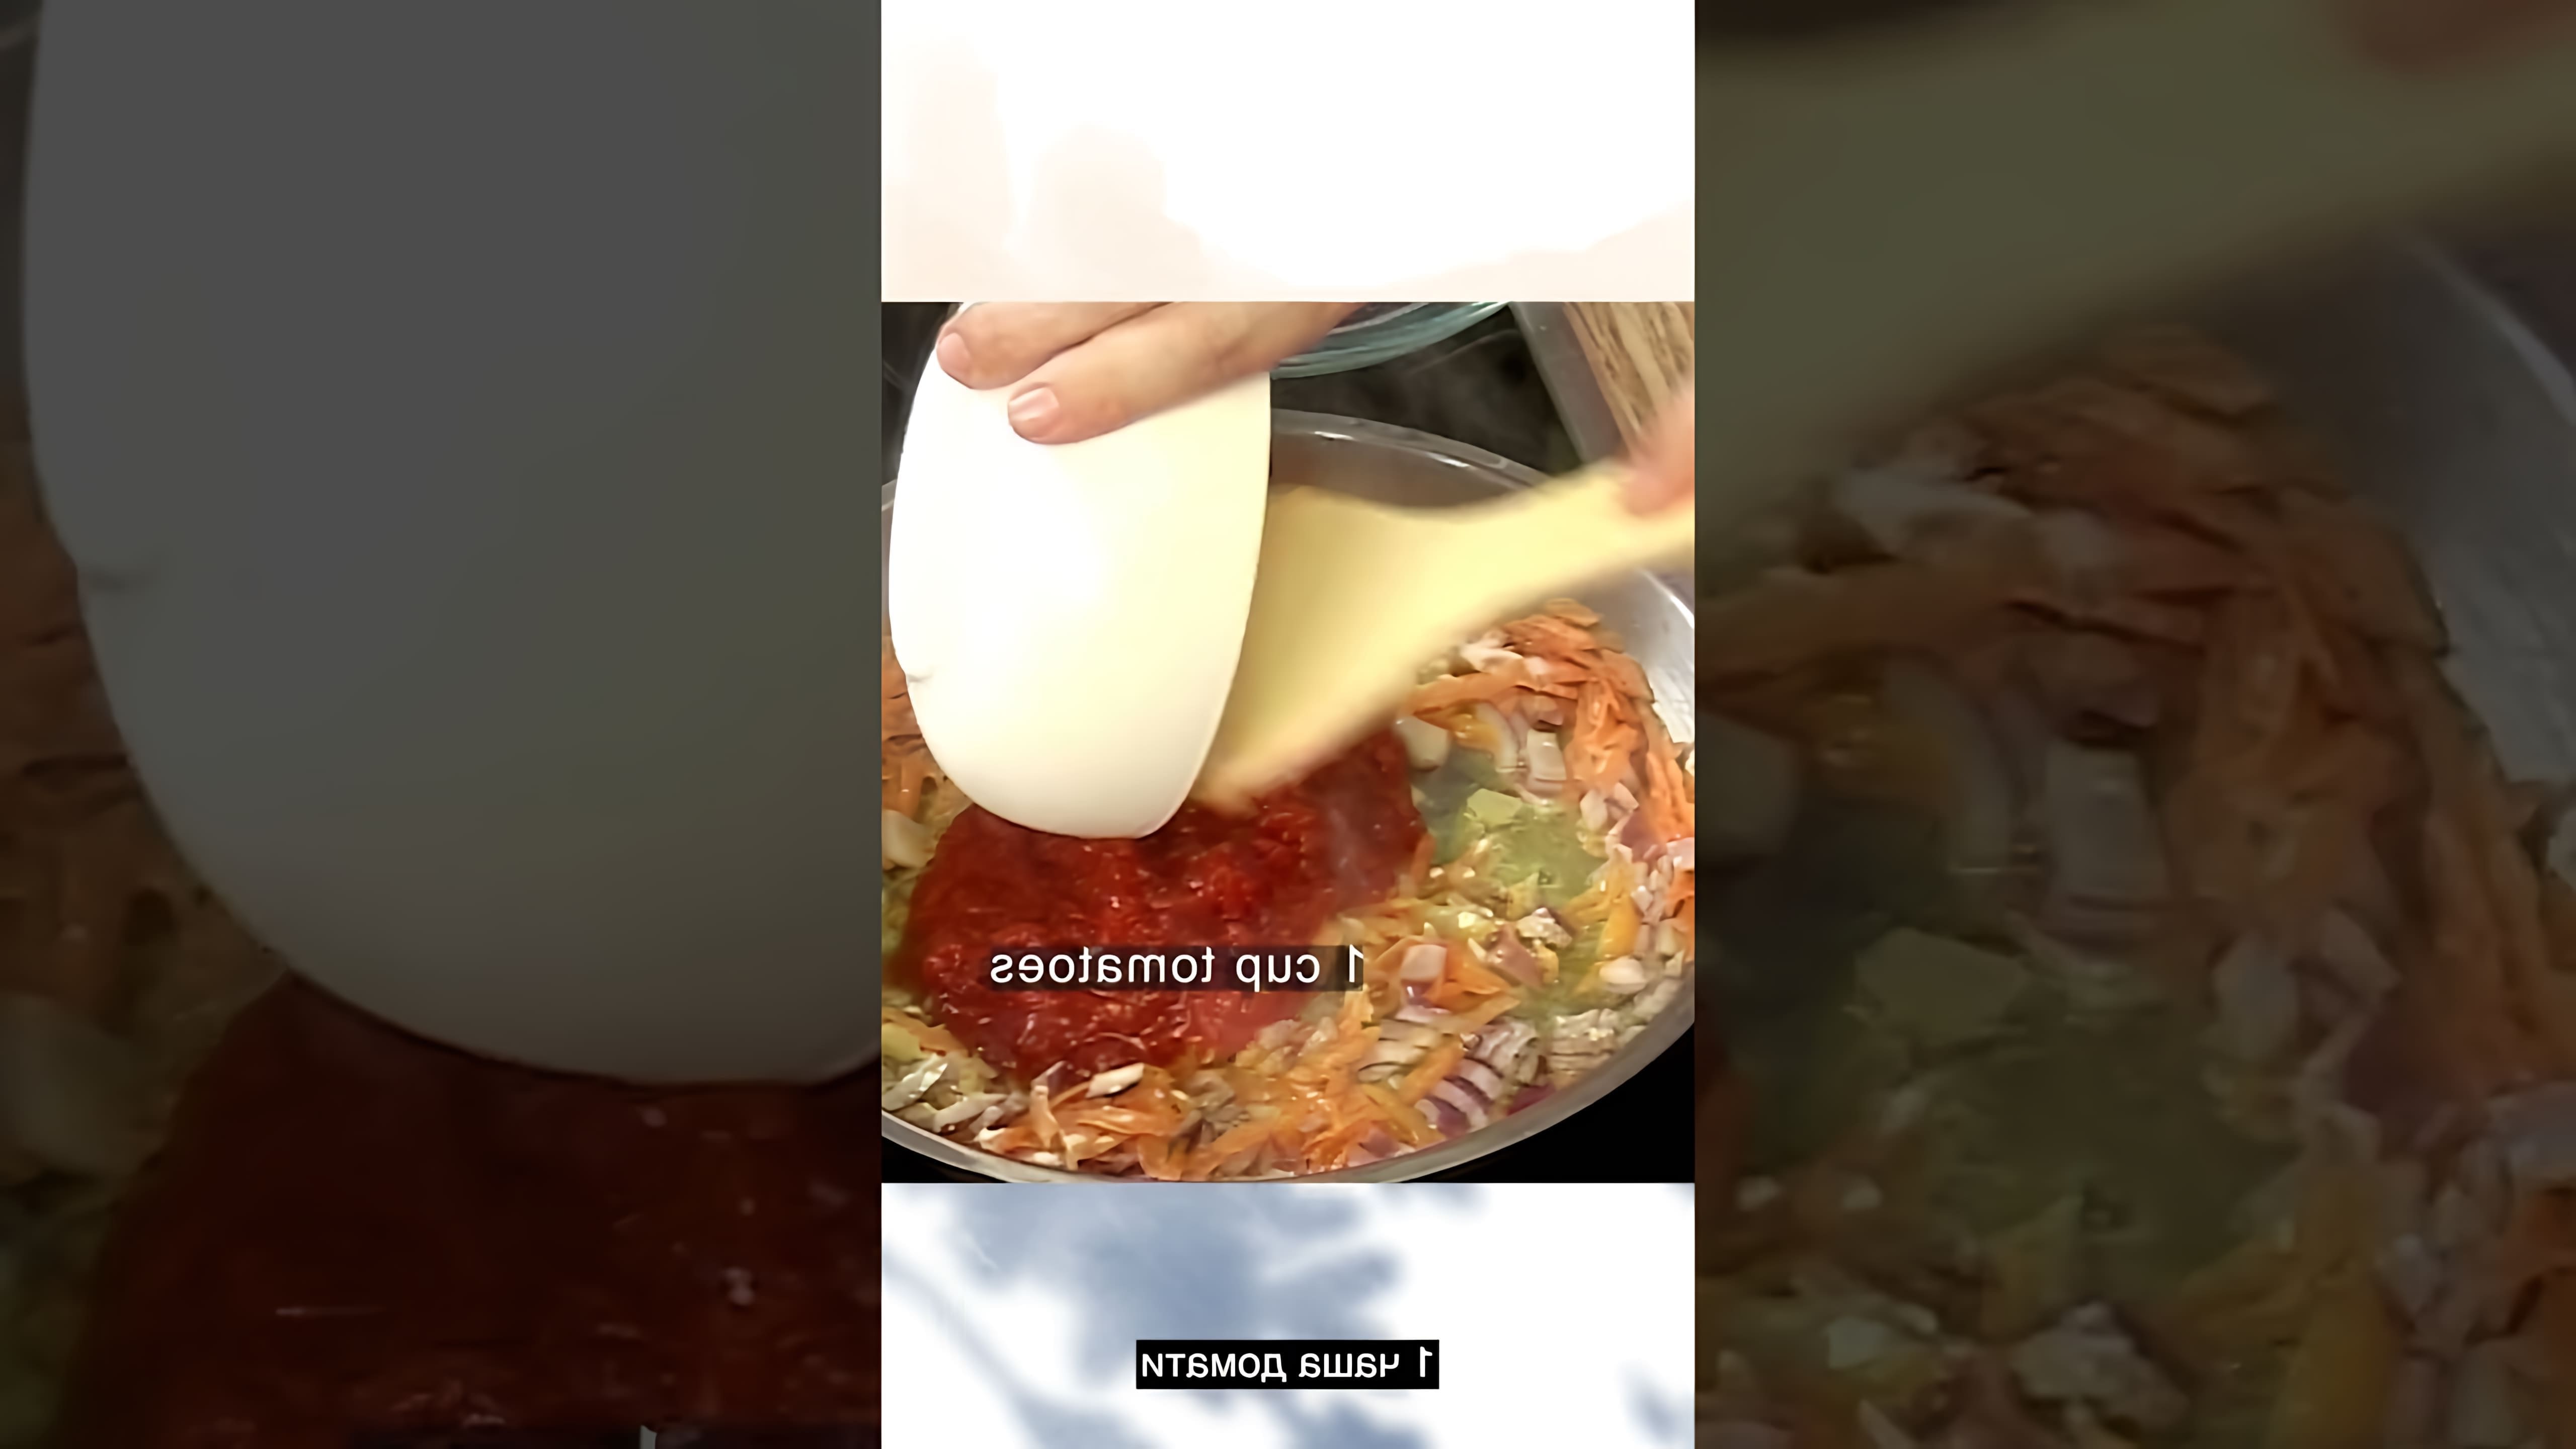 В данном видео демонстрируется процесс приготовления блюда "Пилешка дроб чорба" - это традиционный болгарский суп из куриной печени